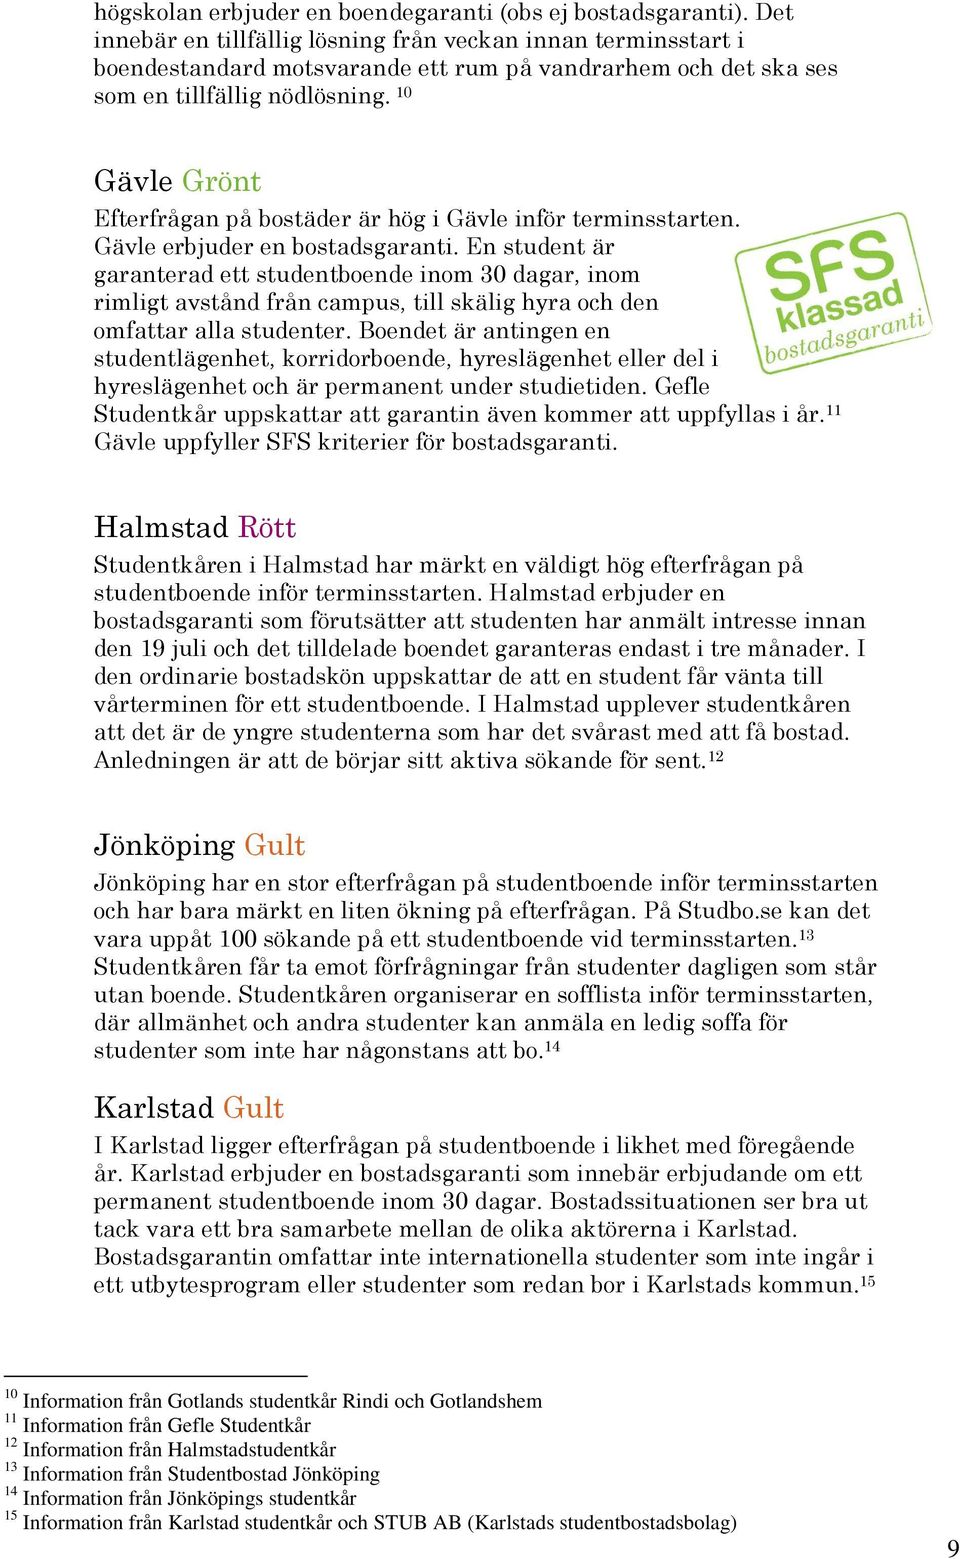 10 Gävle Grönt Efterfrågan på bostäder är hög i Gävle inför terminsstarten. Gävle erbjuder en bostadsgaranti.